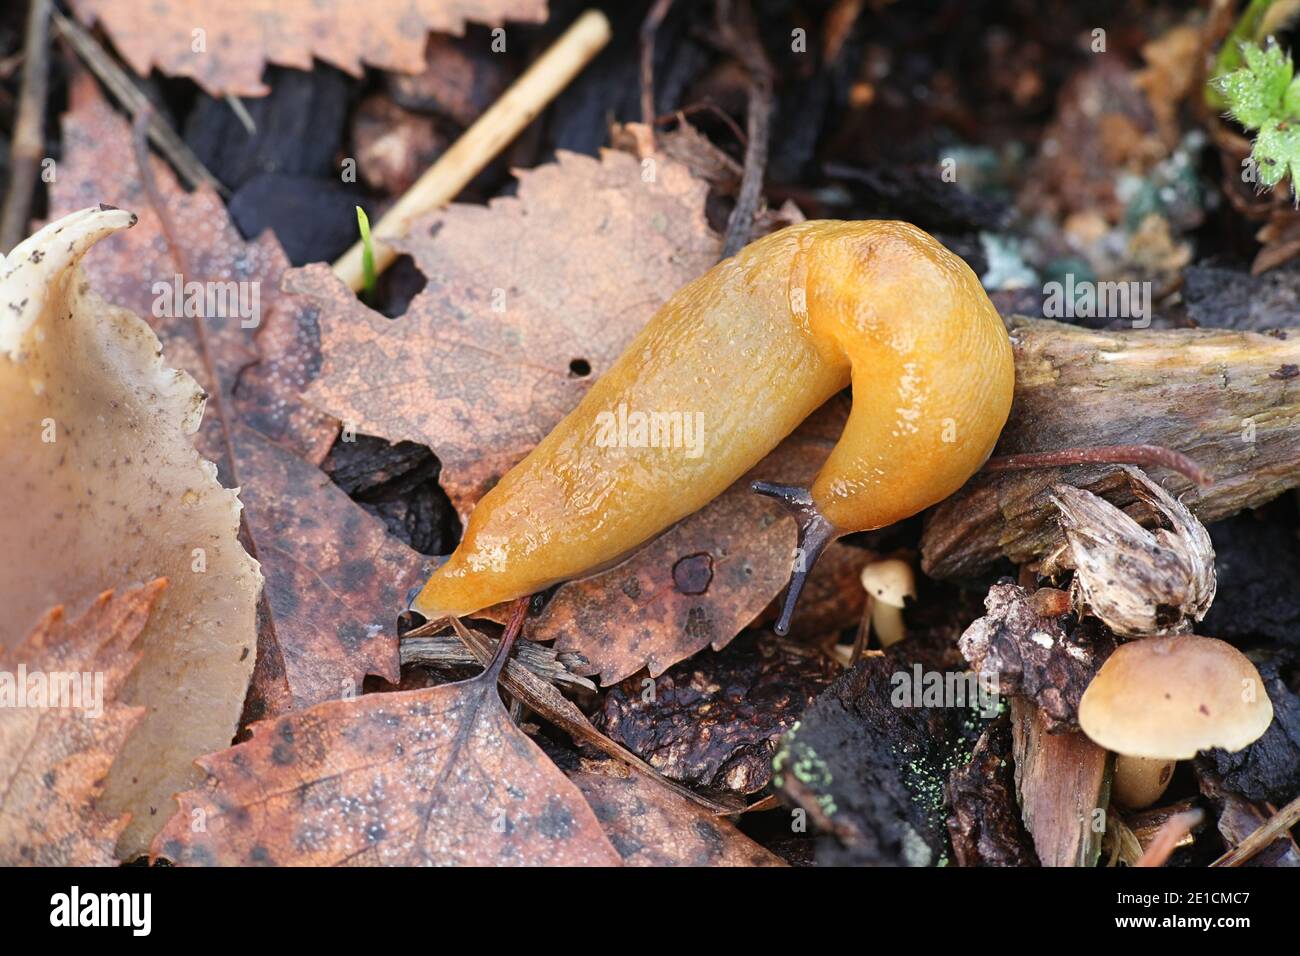 Malacolimax tenellus, commonly known as lemon slug Stock Photo